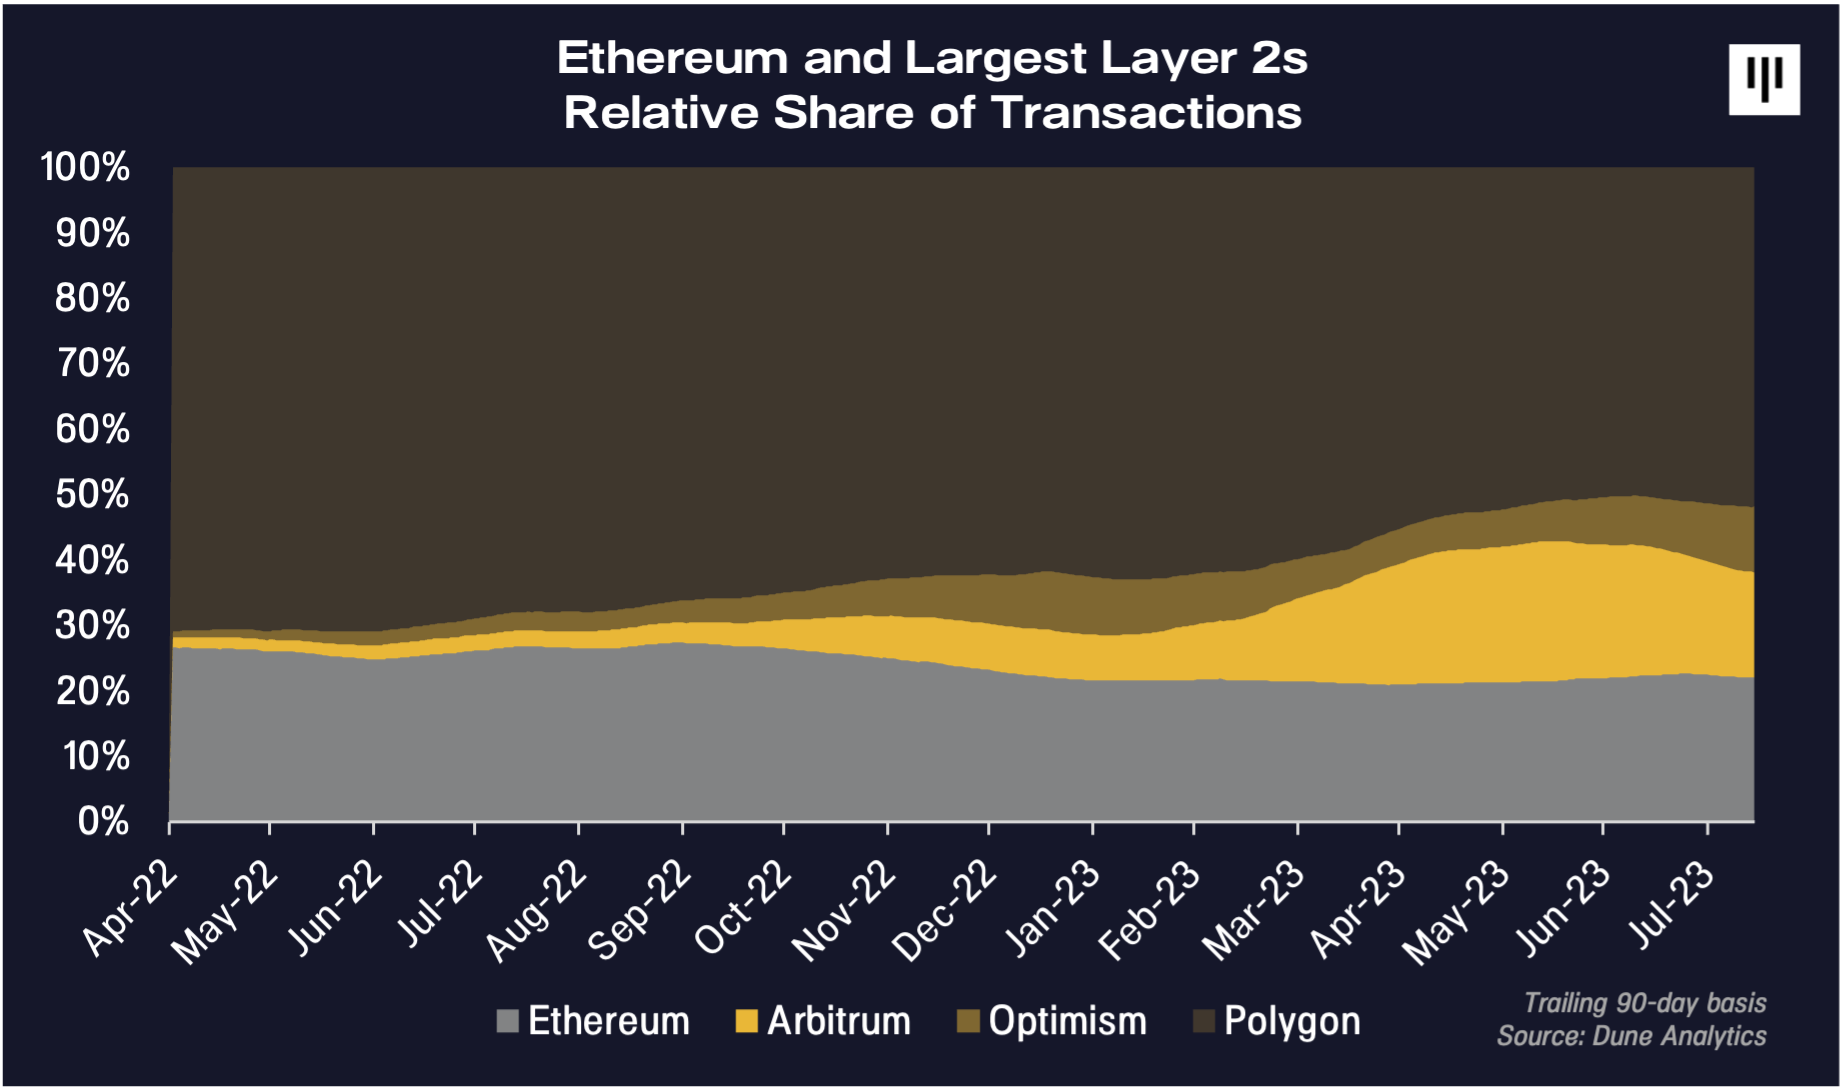 Pantera Capital dice que una capa 2 de Ethereum está "en lo más alto de la lista" de nuevas oportunidades criptográficas - The Daily Hodl